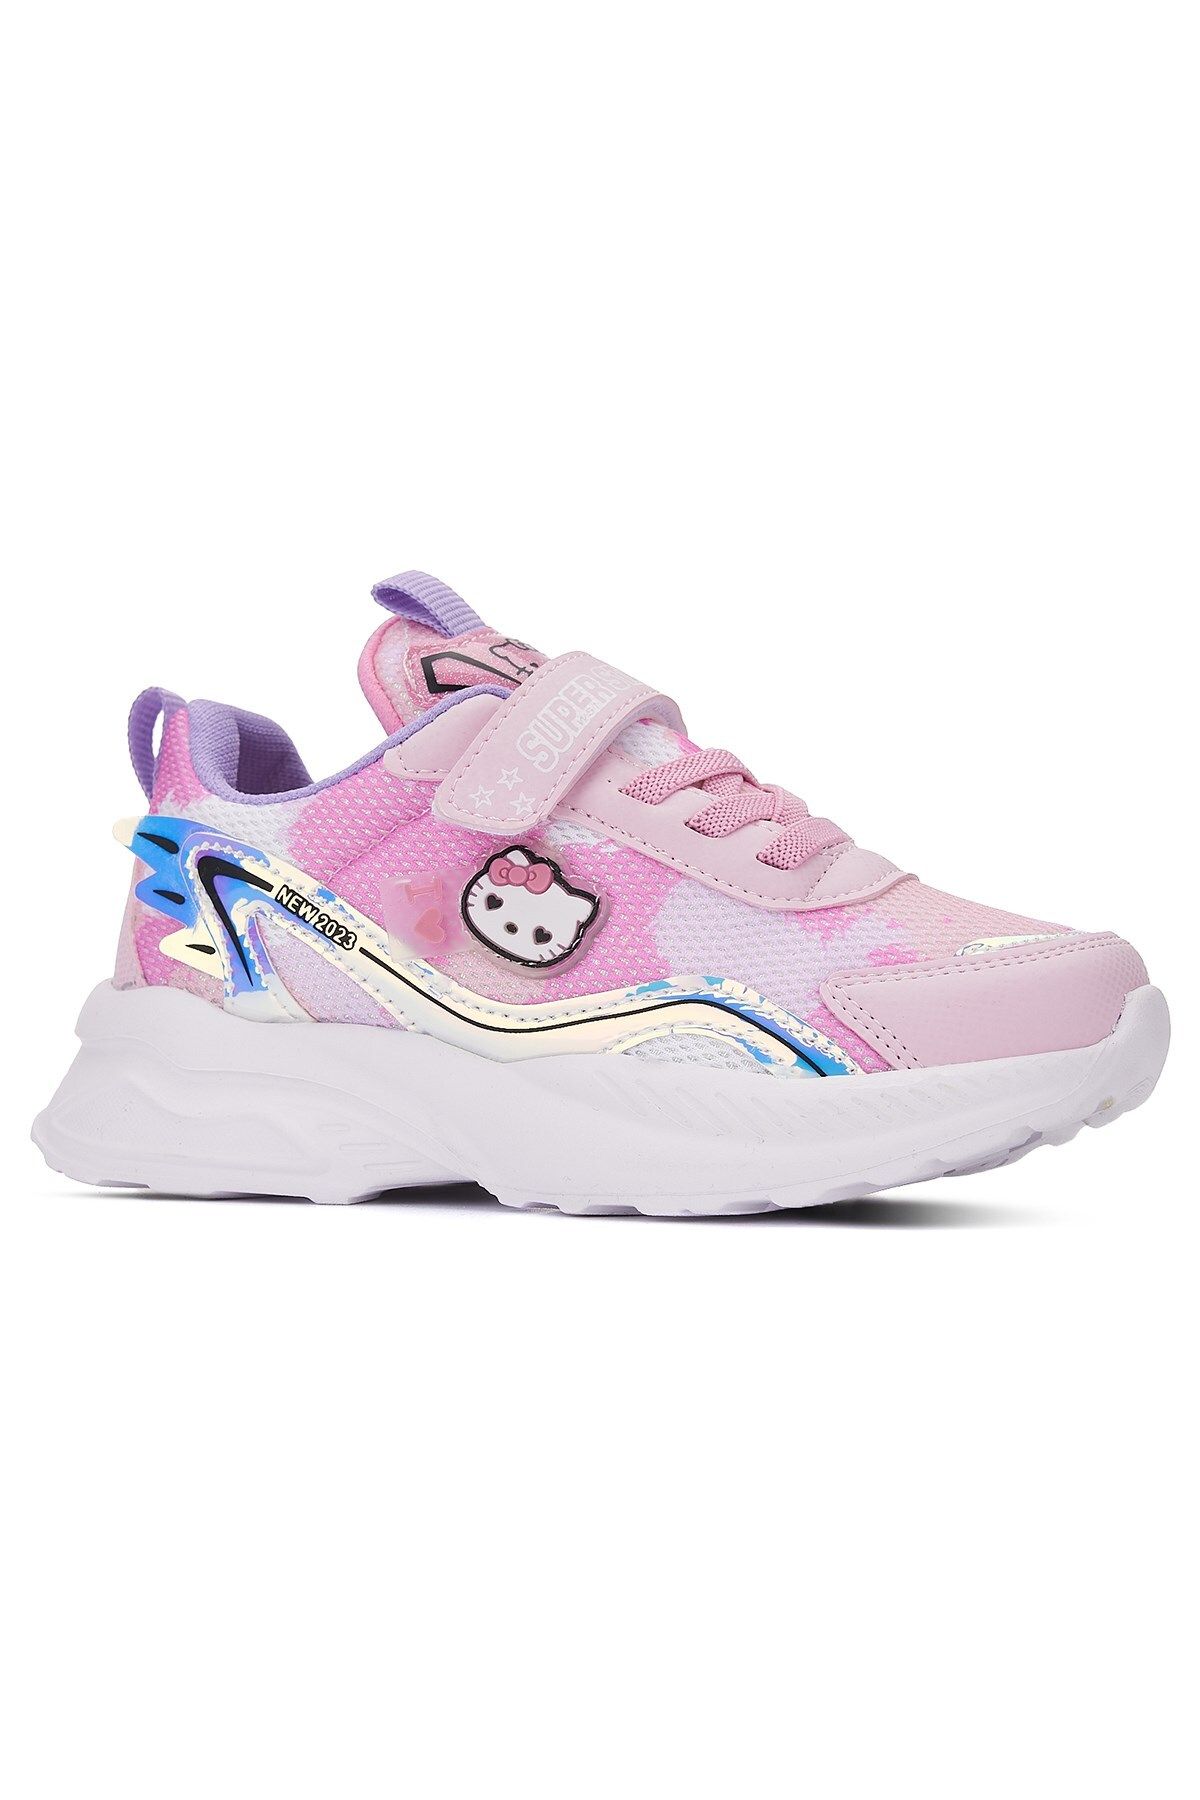 İmerShoes Günlük Kız Çocuk Sneaker Lastik Bağcıklı Hologram Cırtlı Hello Kitty Nefes Alabilen Ayakkabı 2014